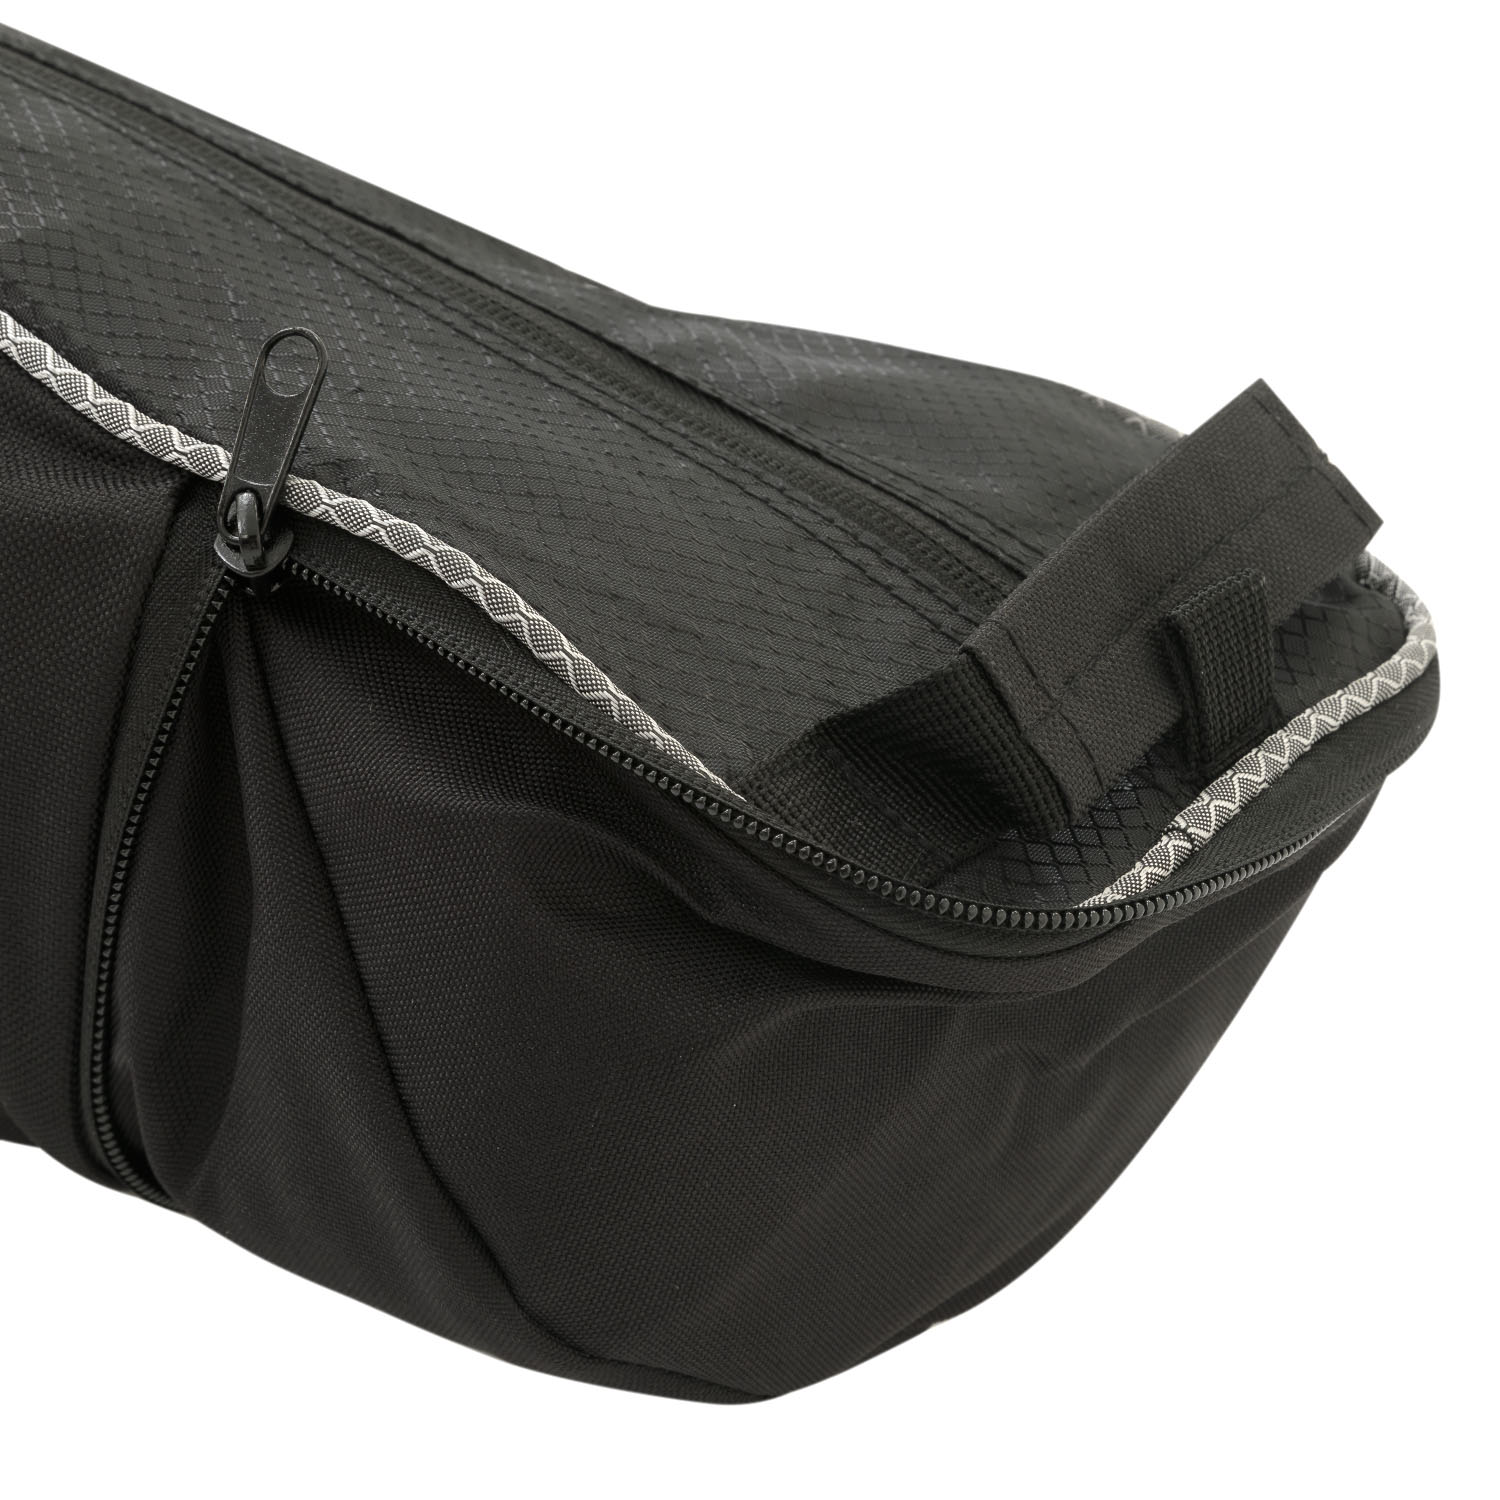 Чехол для горных лыж BLIZZARD Ski bag Premium for 1 pair 145-165 cm Black/Silver